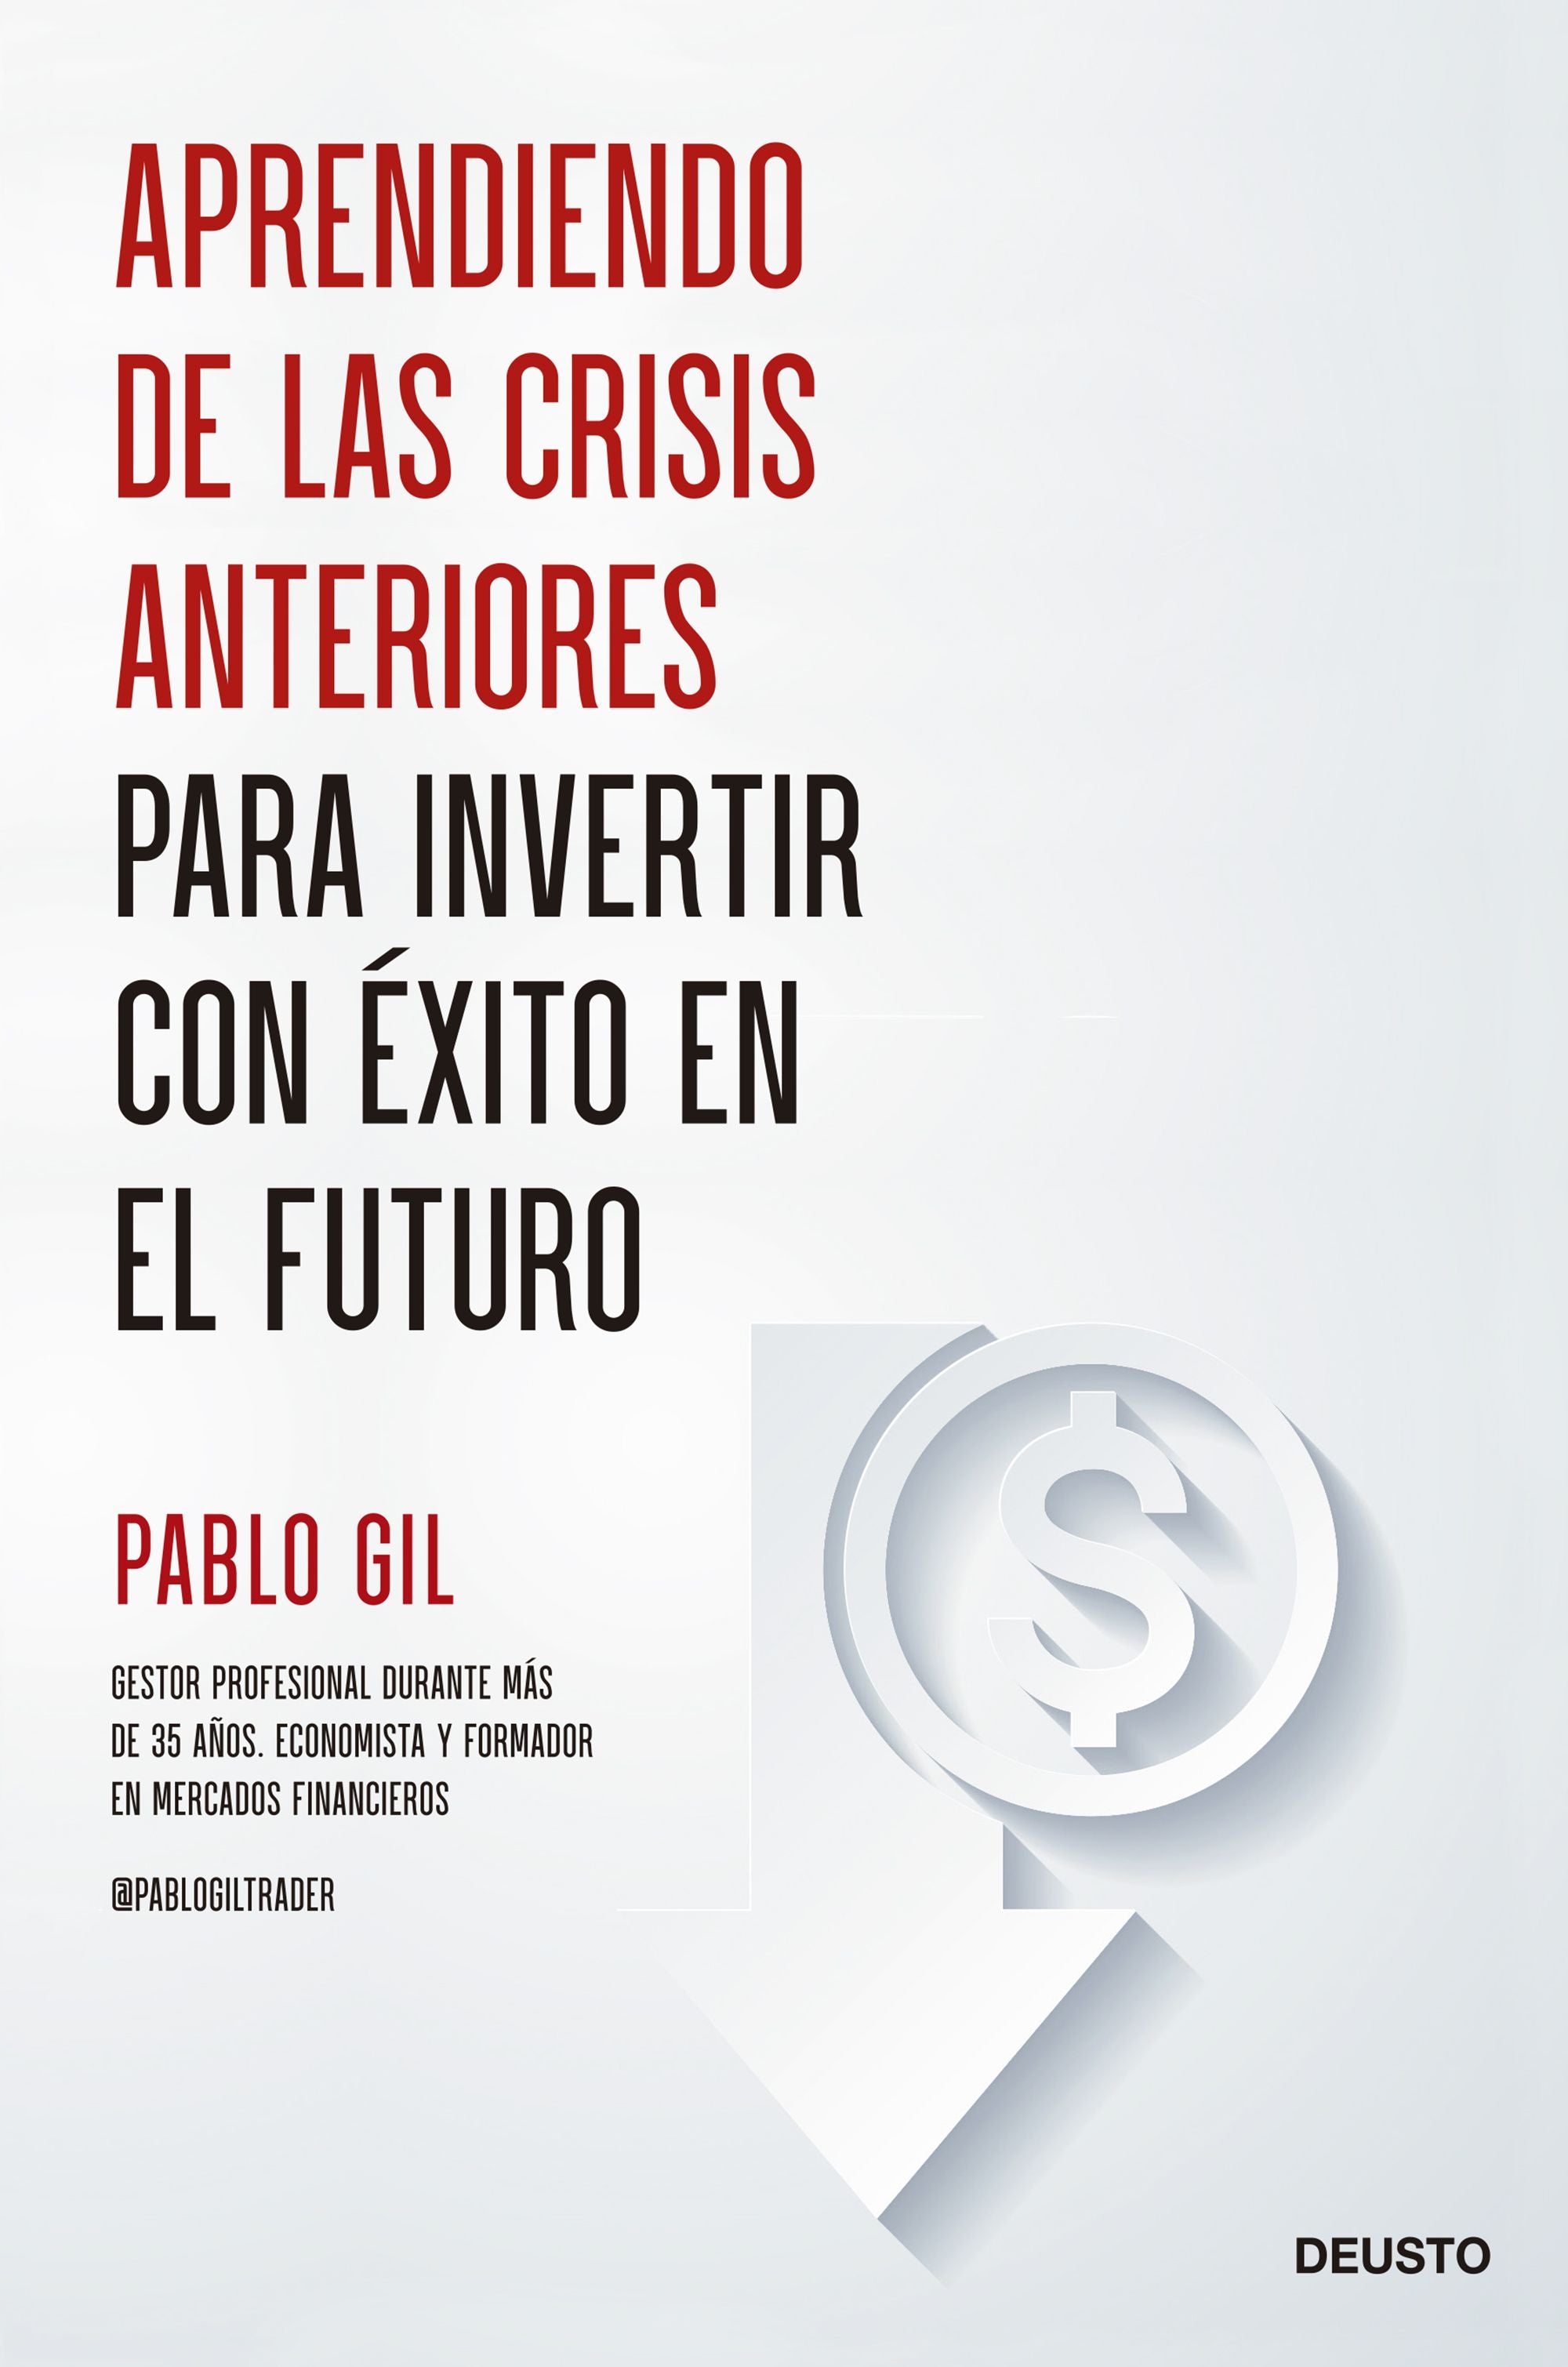 Aprendiendo de las crisis anteriores para invertir - Pablo Gil